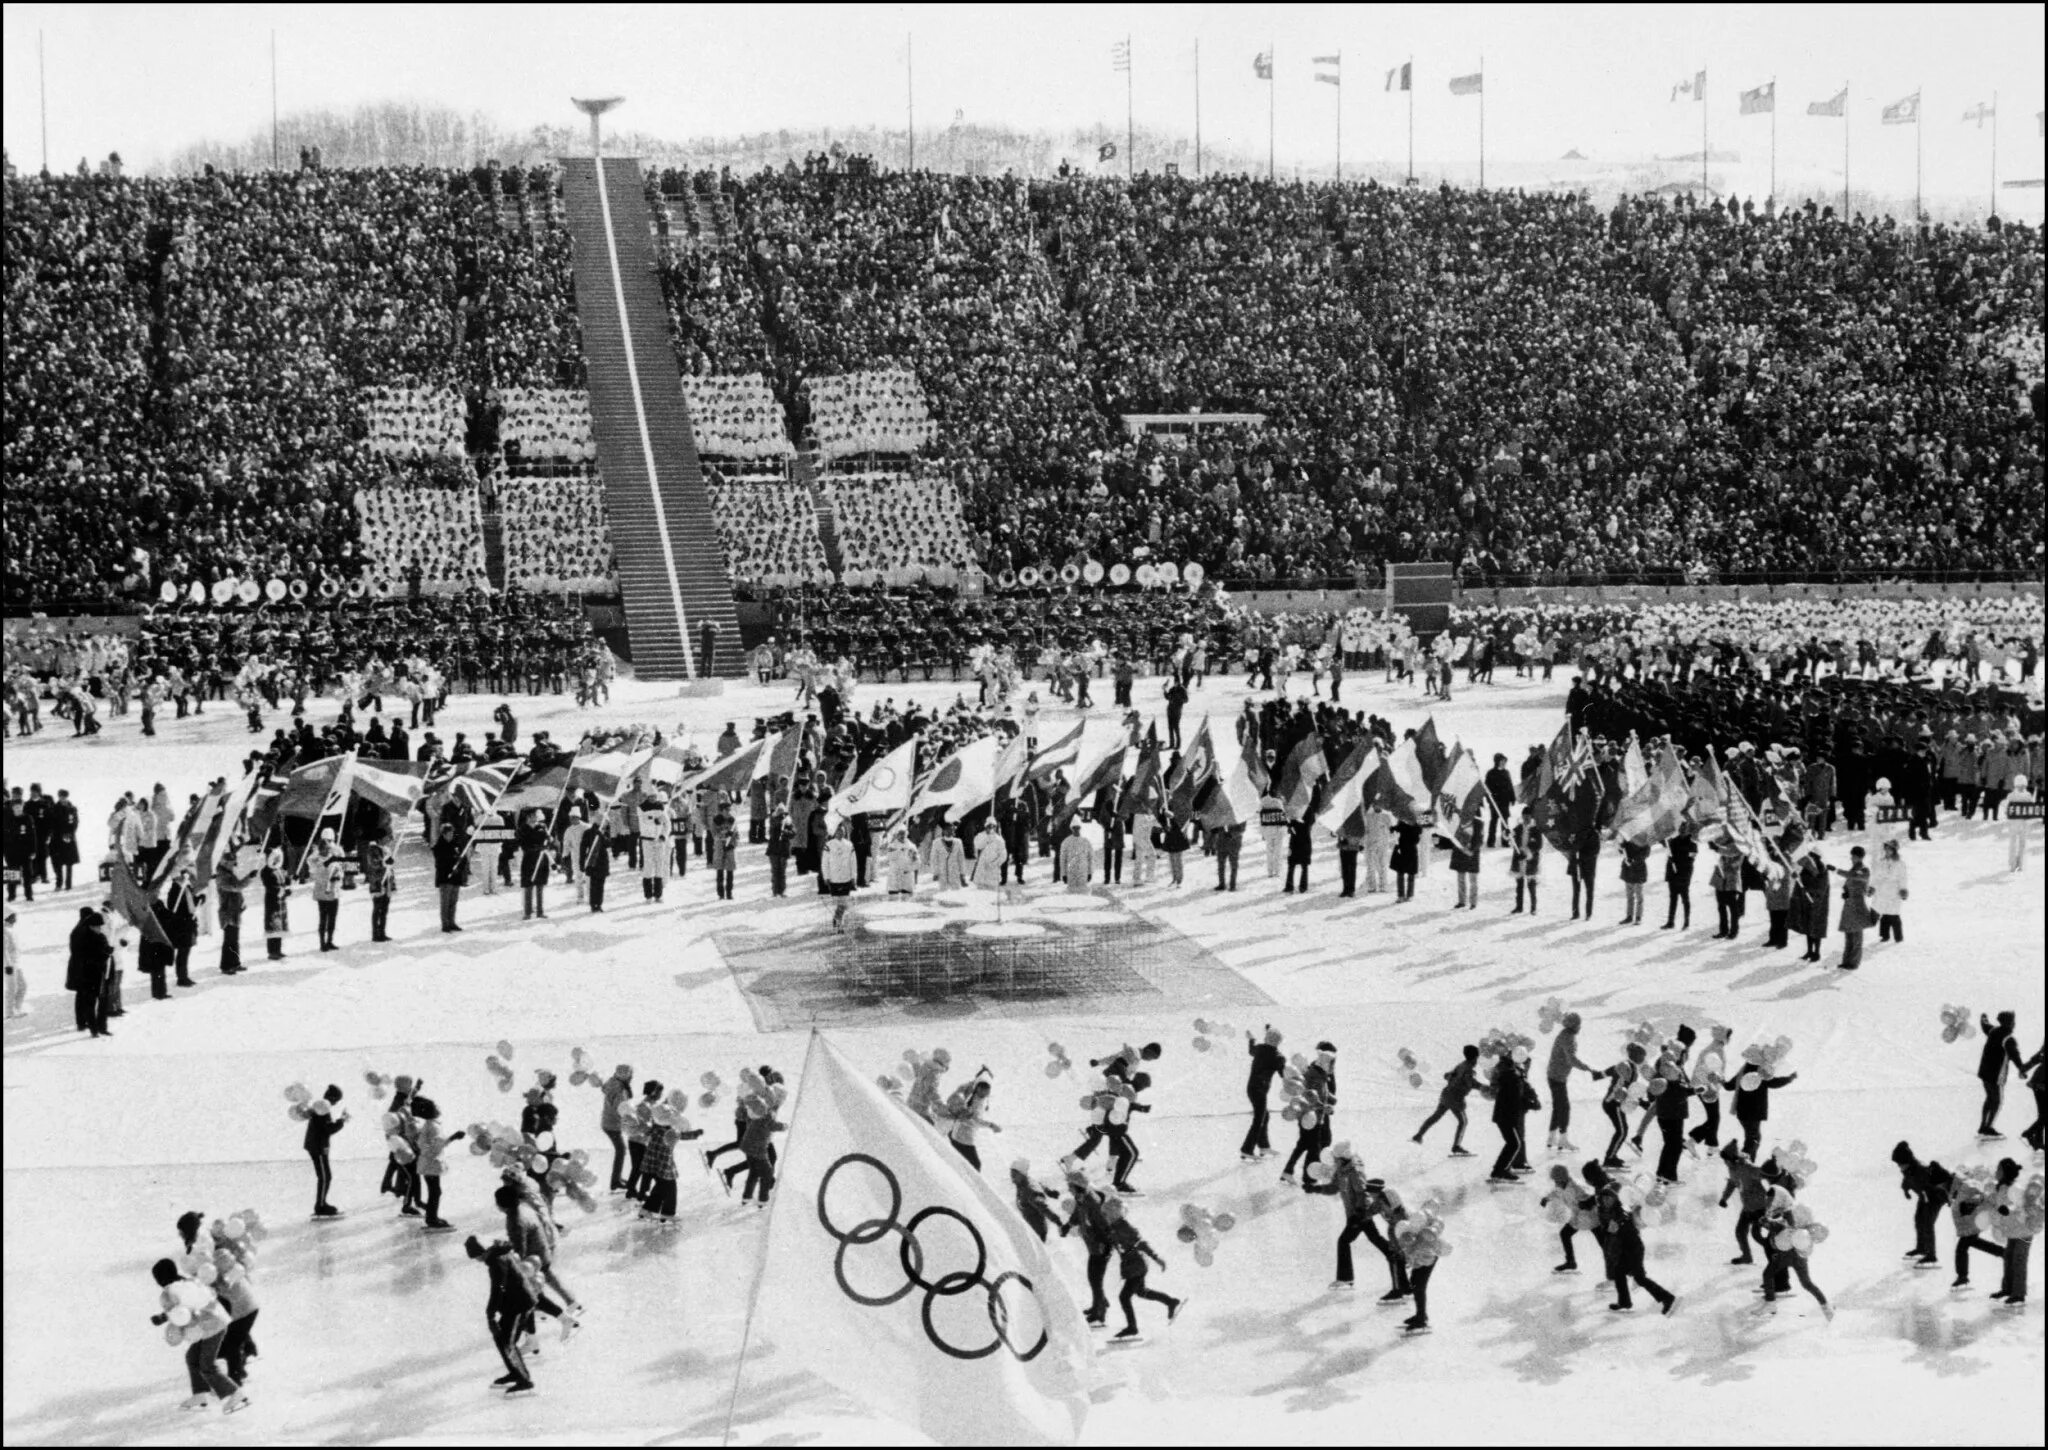 Xi олимпийские игры. Олимпийские игры в Саппоро 1972. XI зимние Олимпийские игры, 1972, Саппоро.